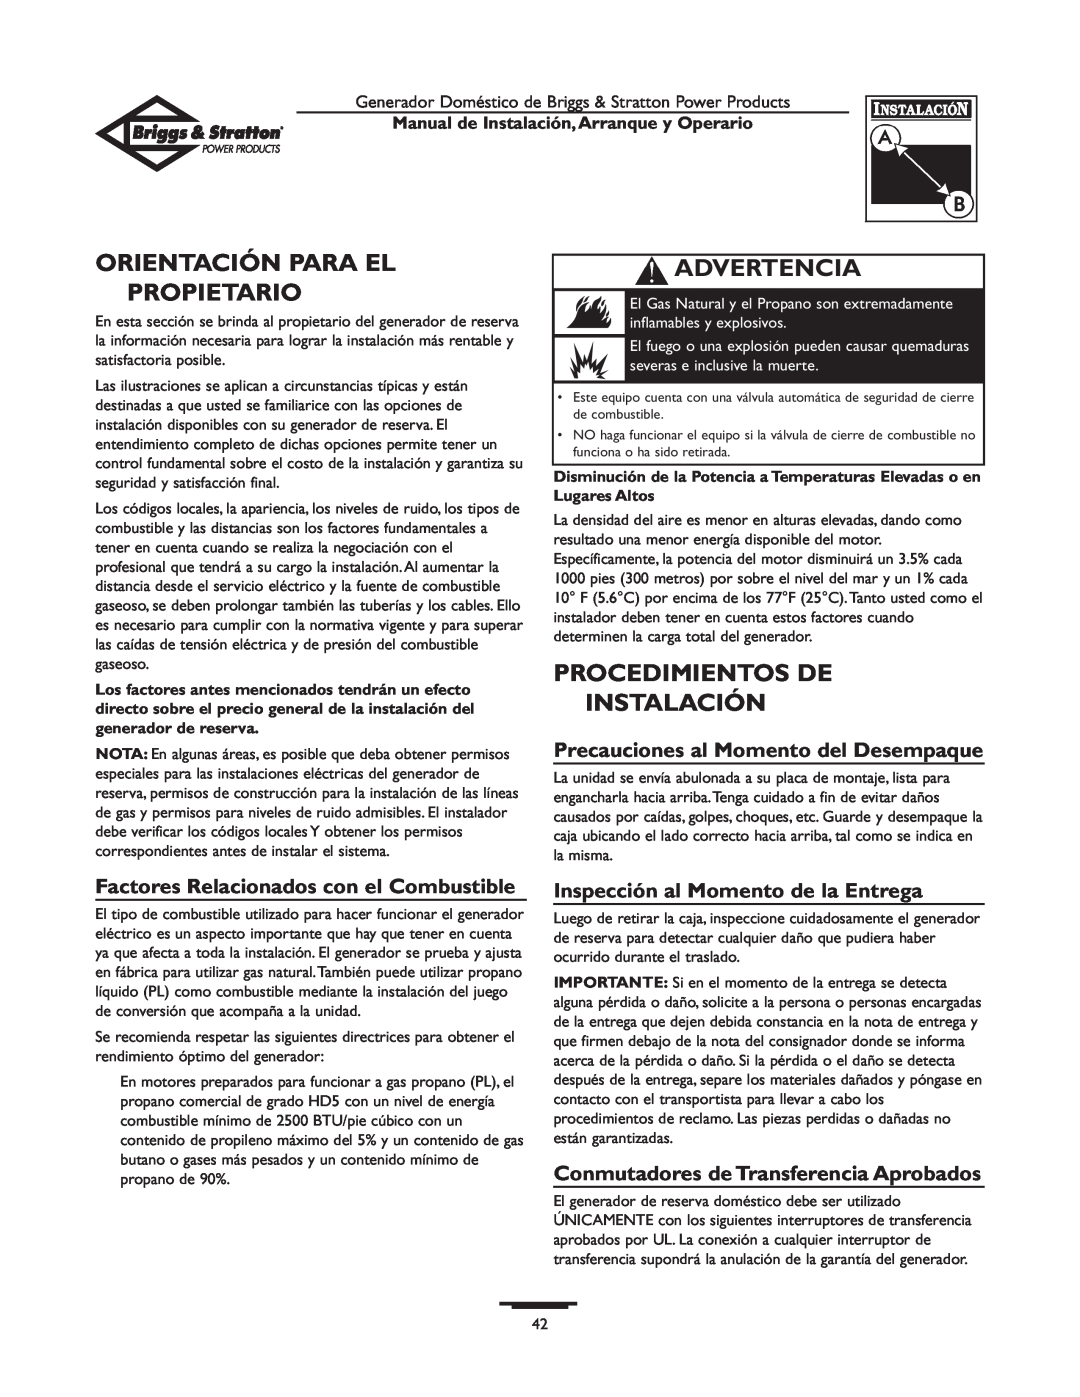 Briggs & Stratton 01897-0 manual Orientación Para El Propietario, Procedimientos De Instalación, Advertencia 